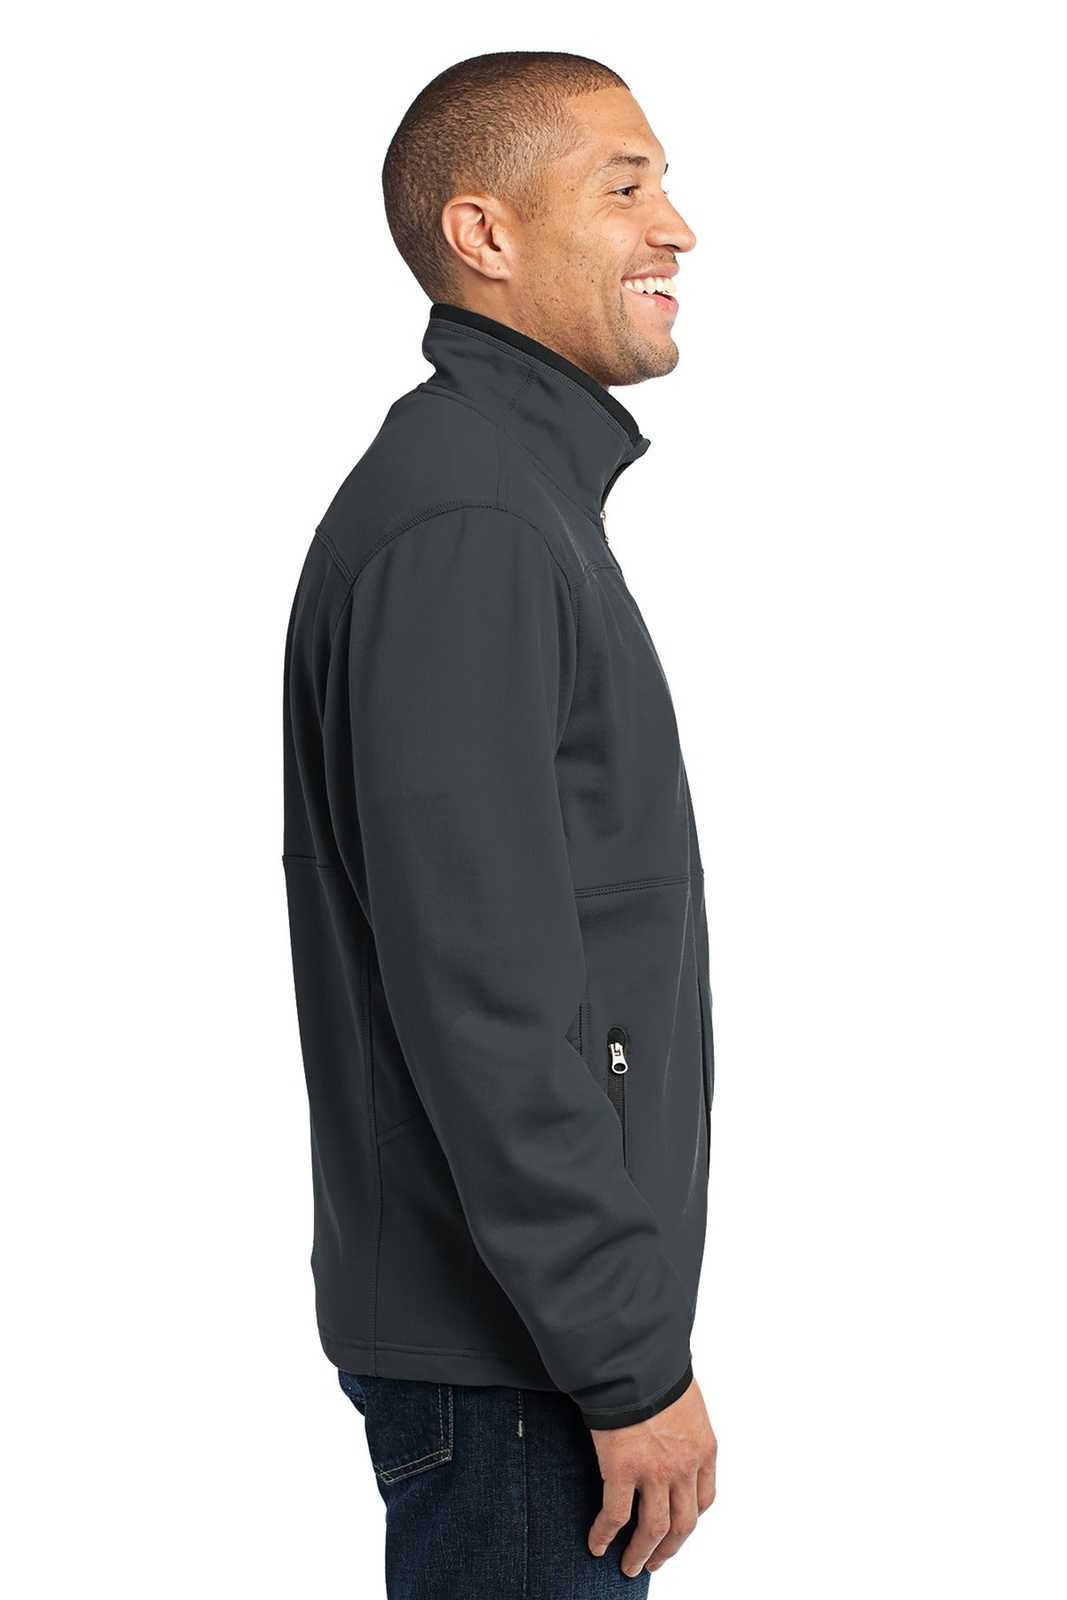 Port Authority F222 Pique Fleece Jacket - Graphite - HIT a Double - 3